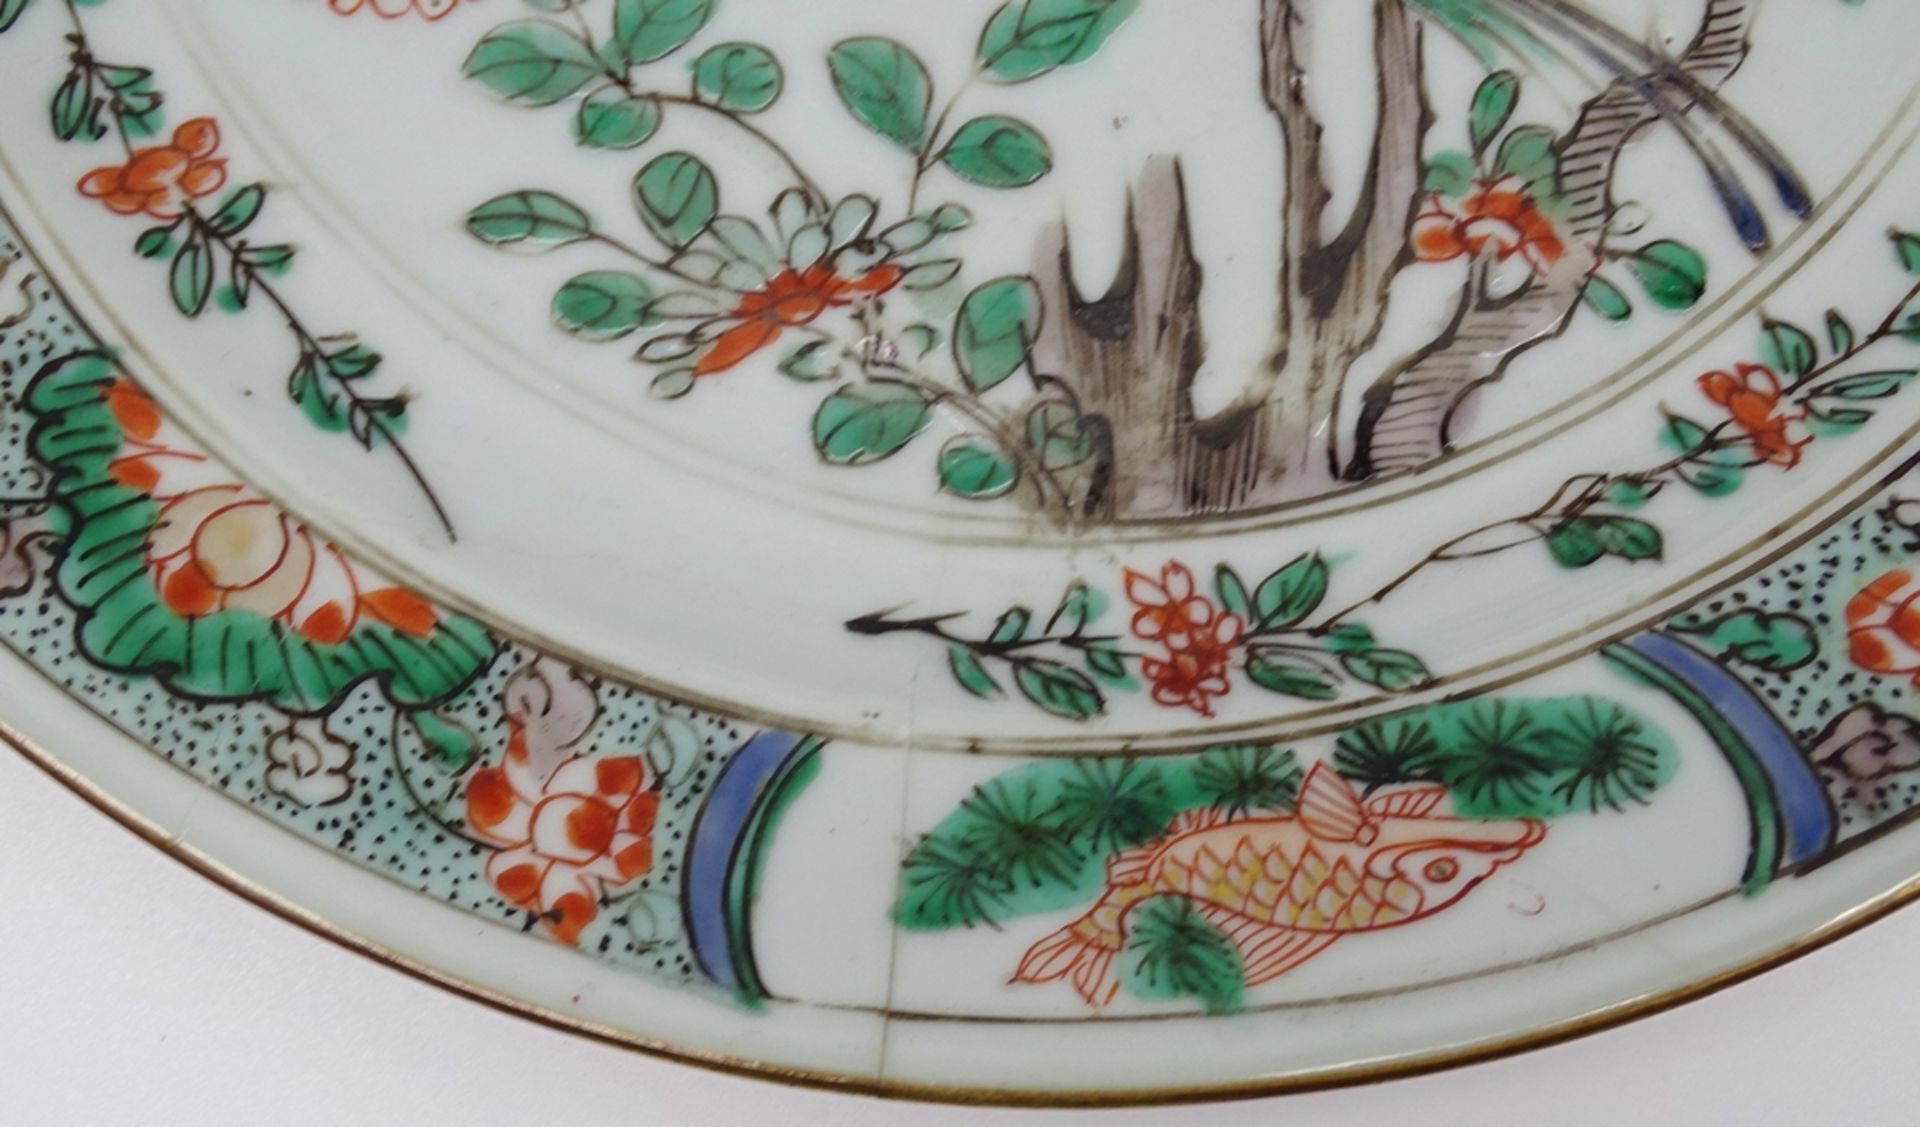 Großer Teller mit Vogel und Blumenmotiven,China, älter, D. 24cm, geklebte Stellen - Bild 4 aus 11